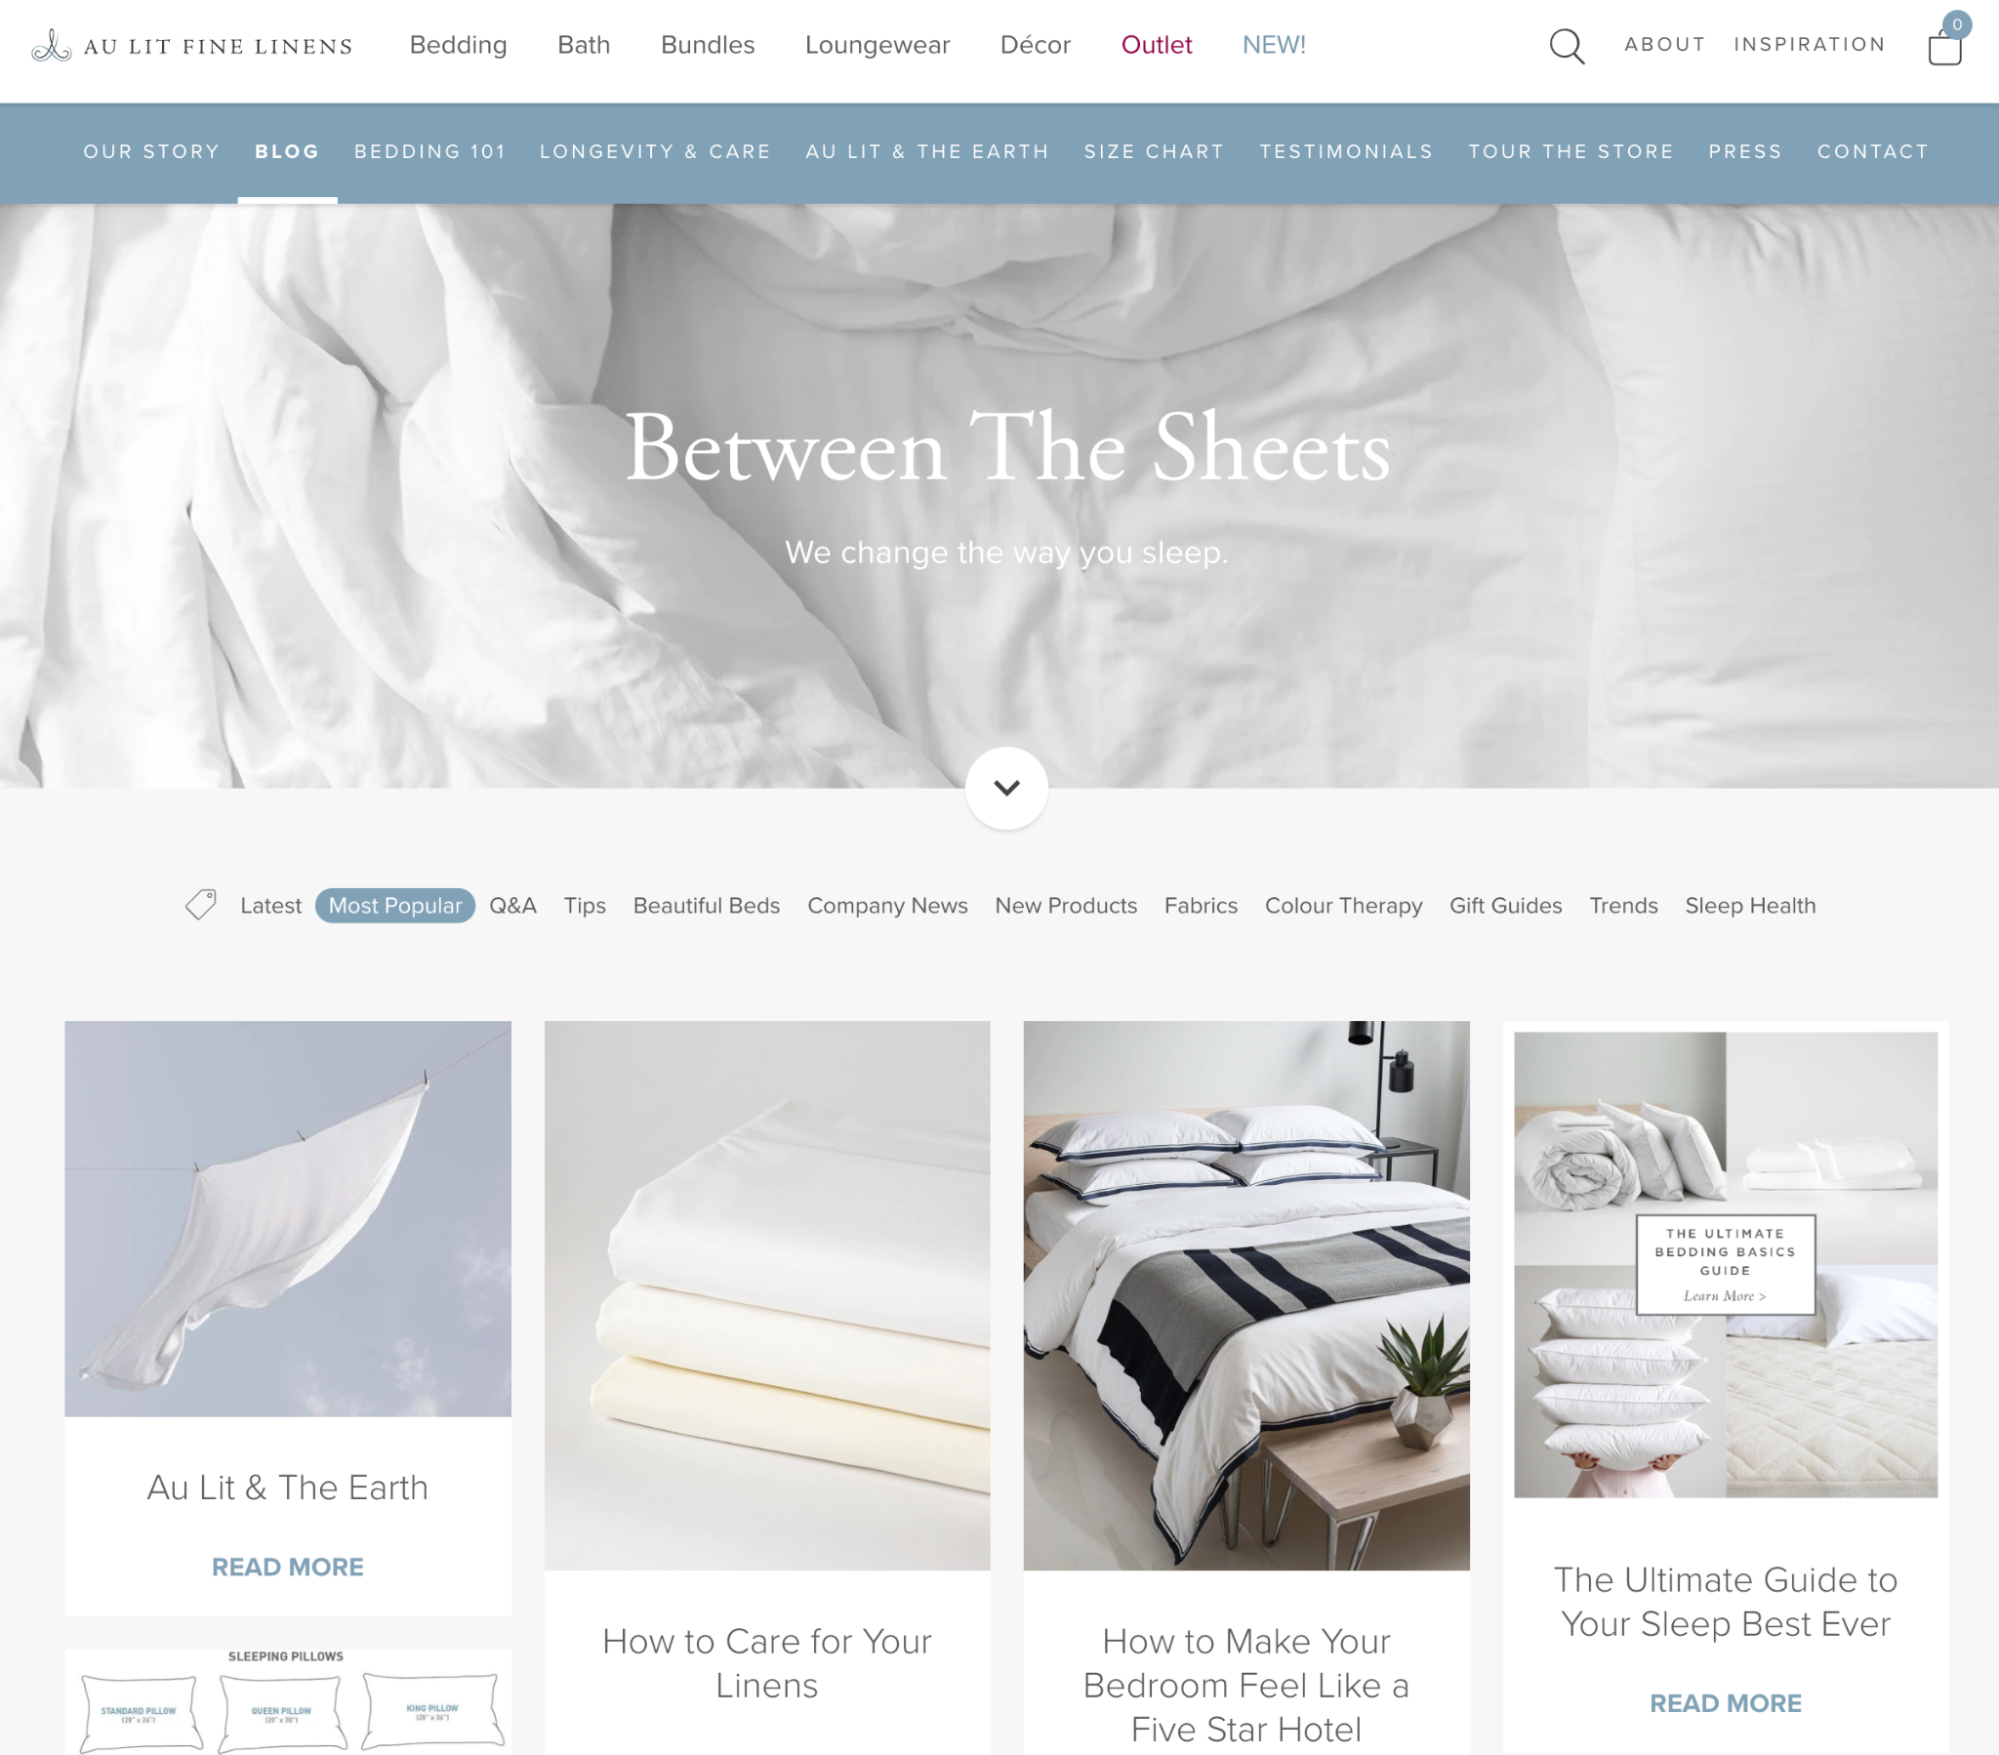 Blog landing page for Shopify merchant Au Lit Fine Linens